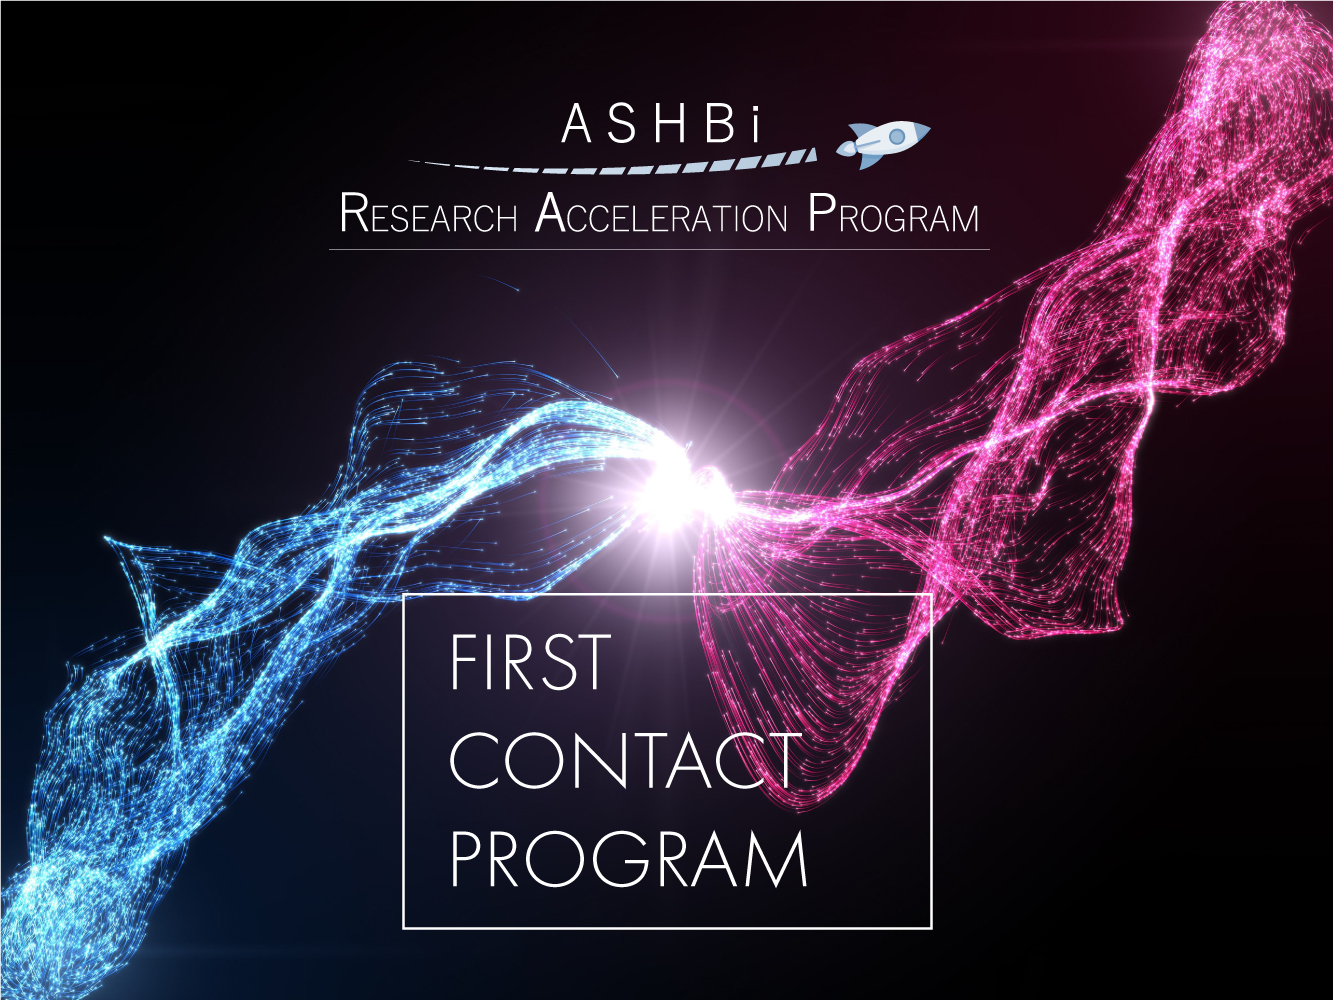 First Contact Program #2 (Dr. Ken-ichiro Kamei)